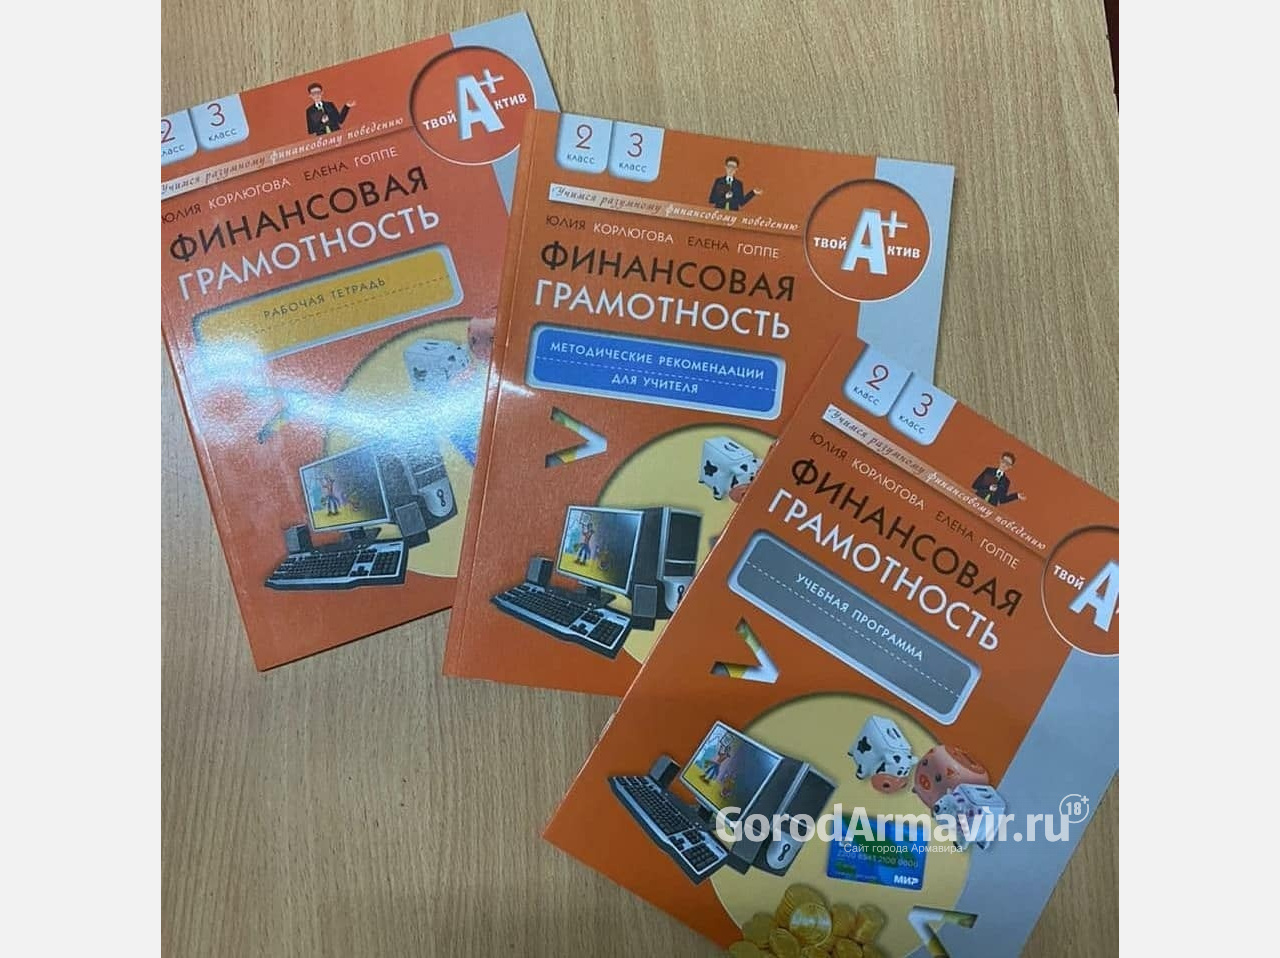 Депутат Ильяс Альмурзиев оказал помощь в доставке 140 новых комплектов учебников школам Армавира